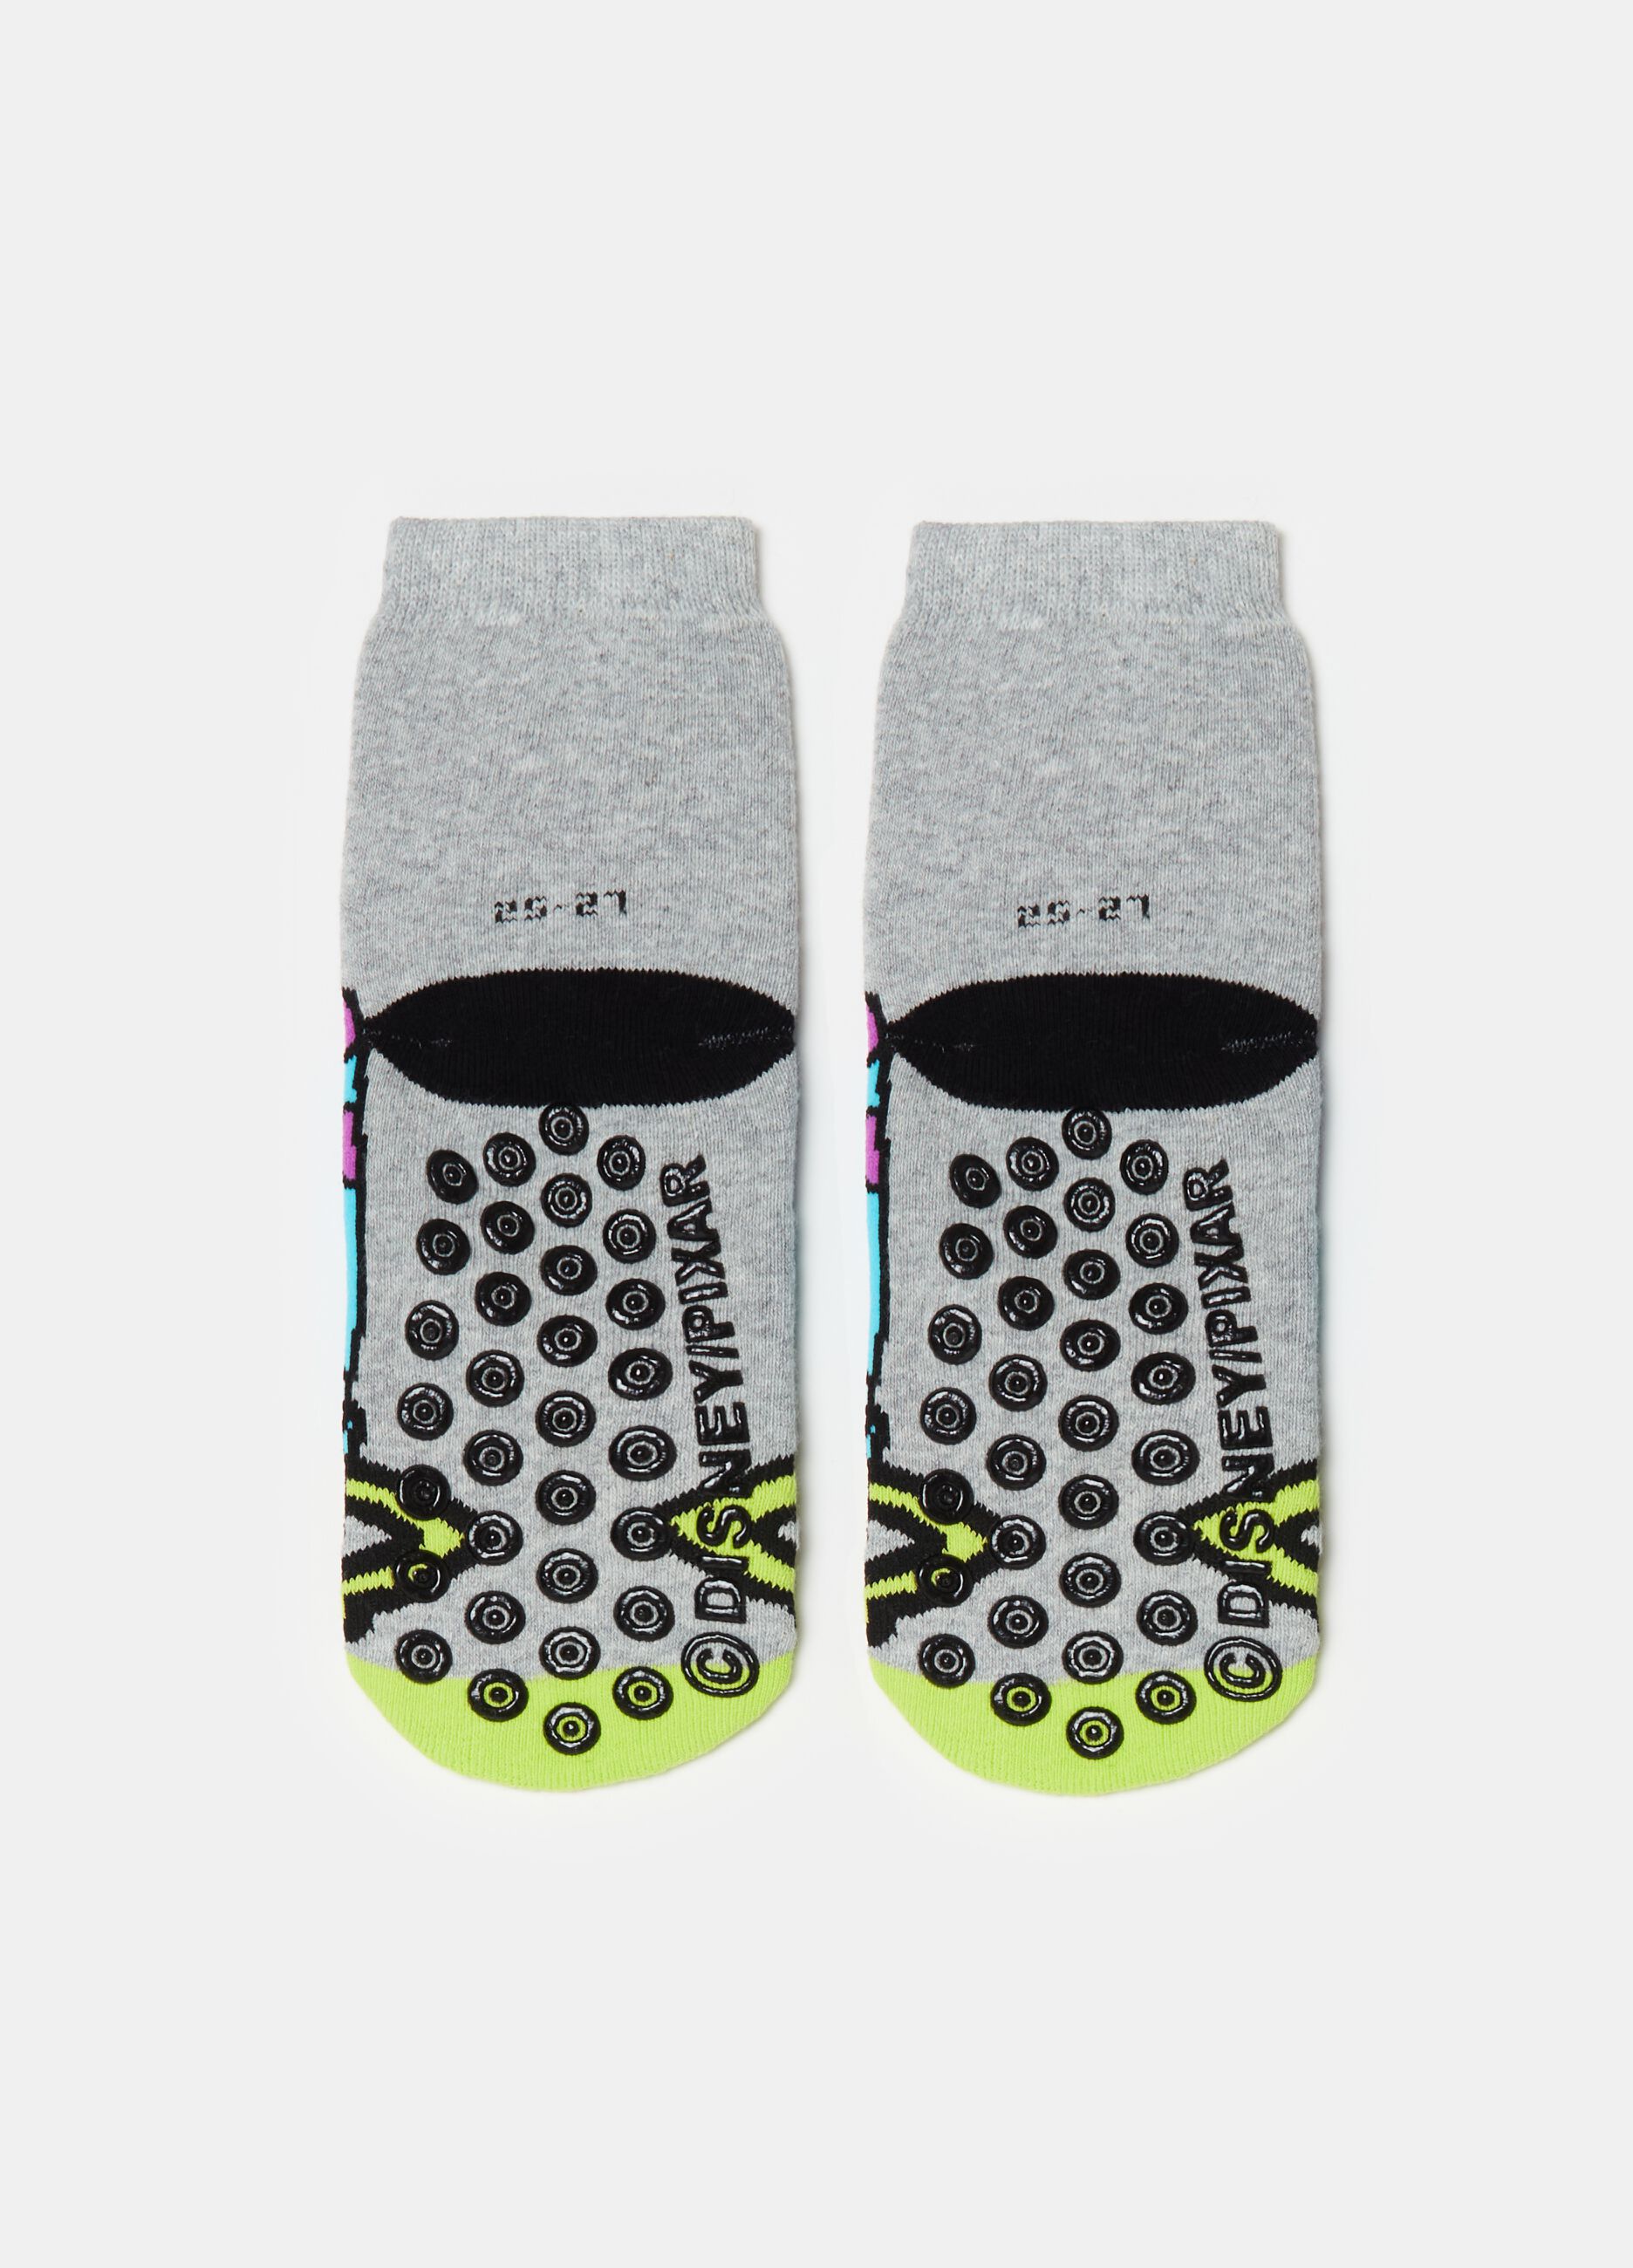 Slipper socks with Monsters & Co. design